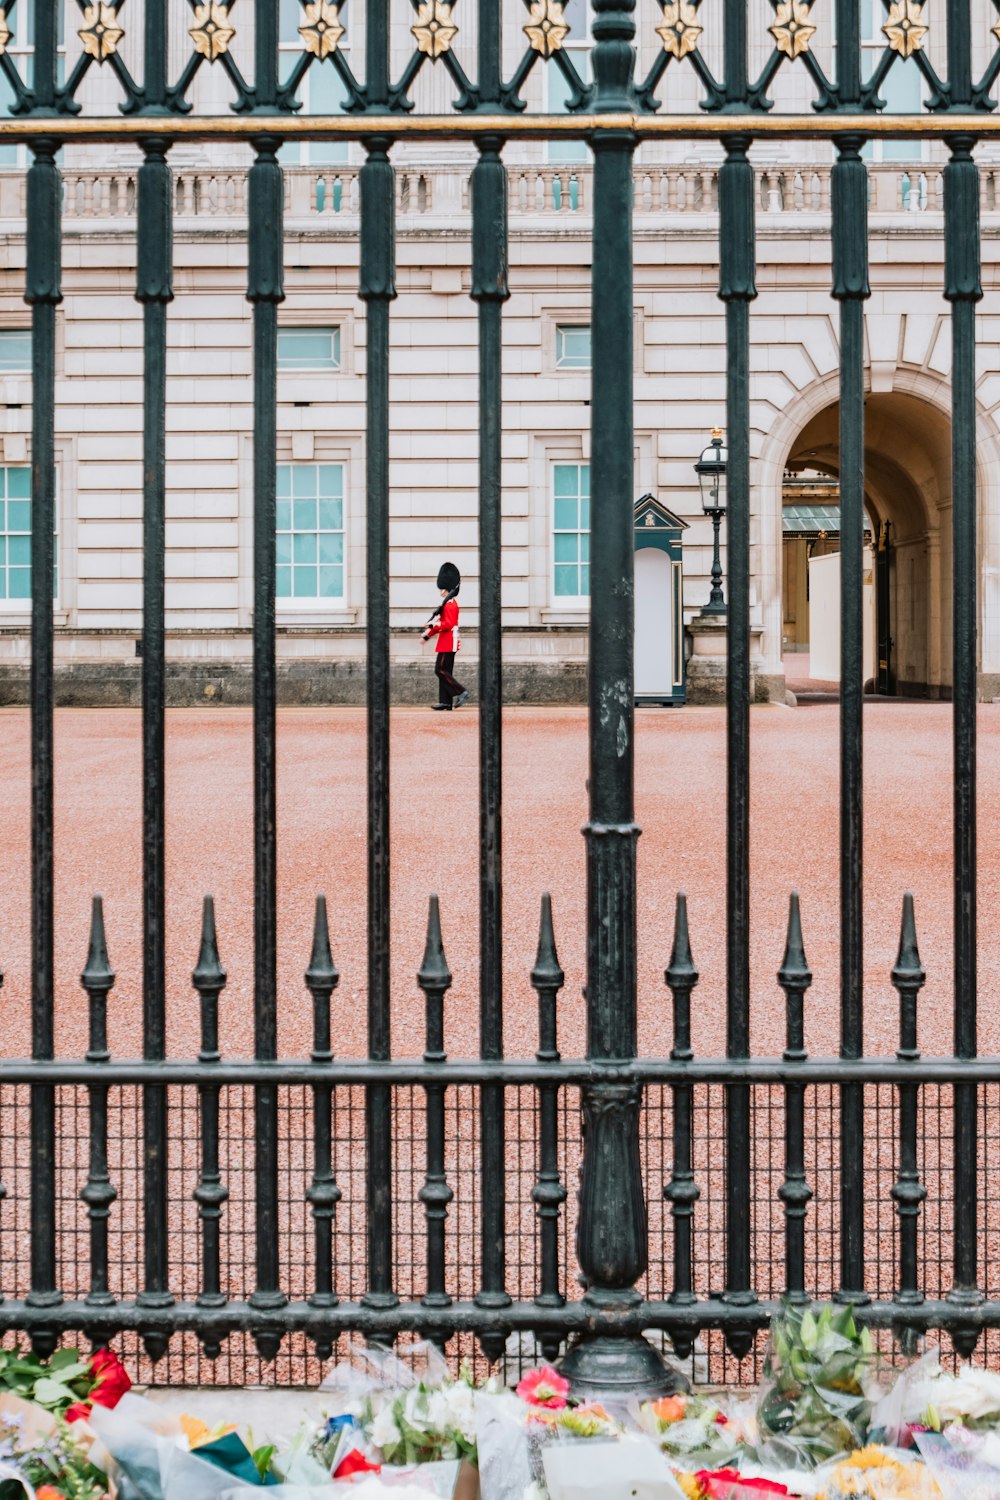 uma pessoa em pé na frente de um portão